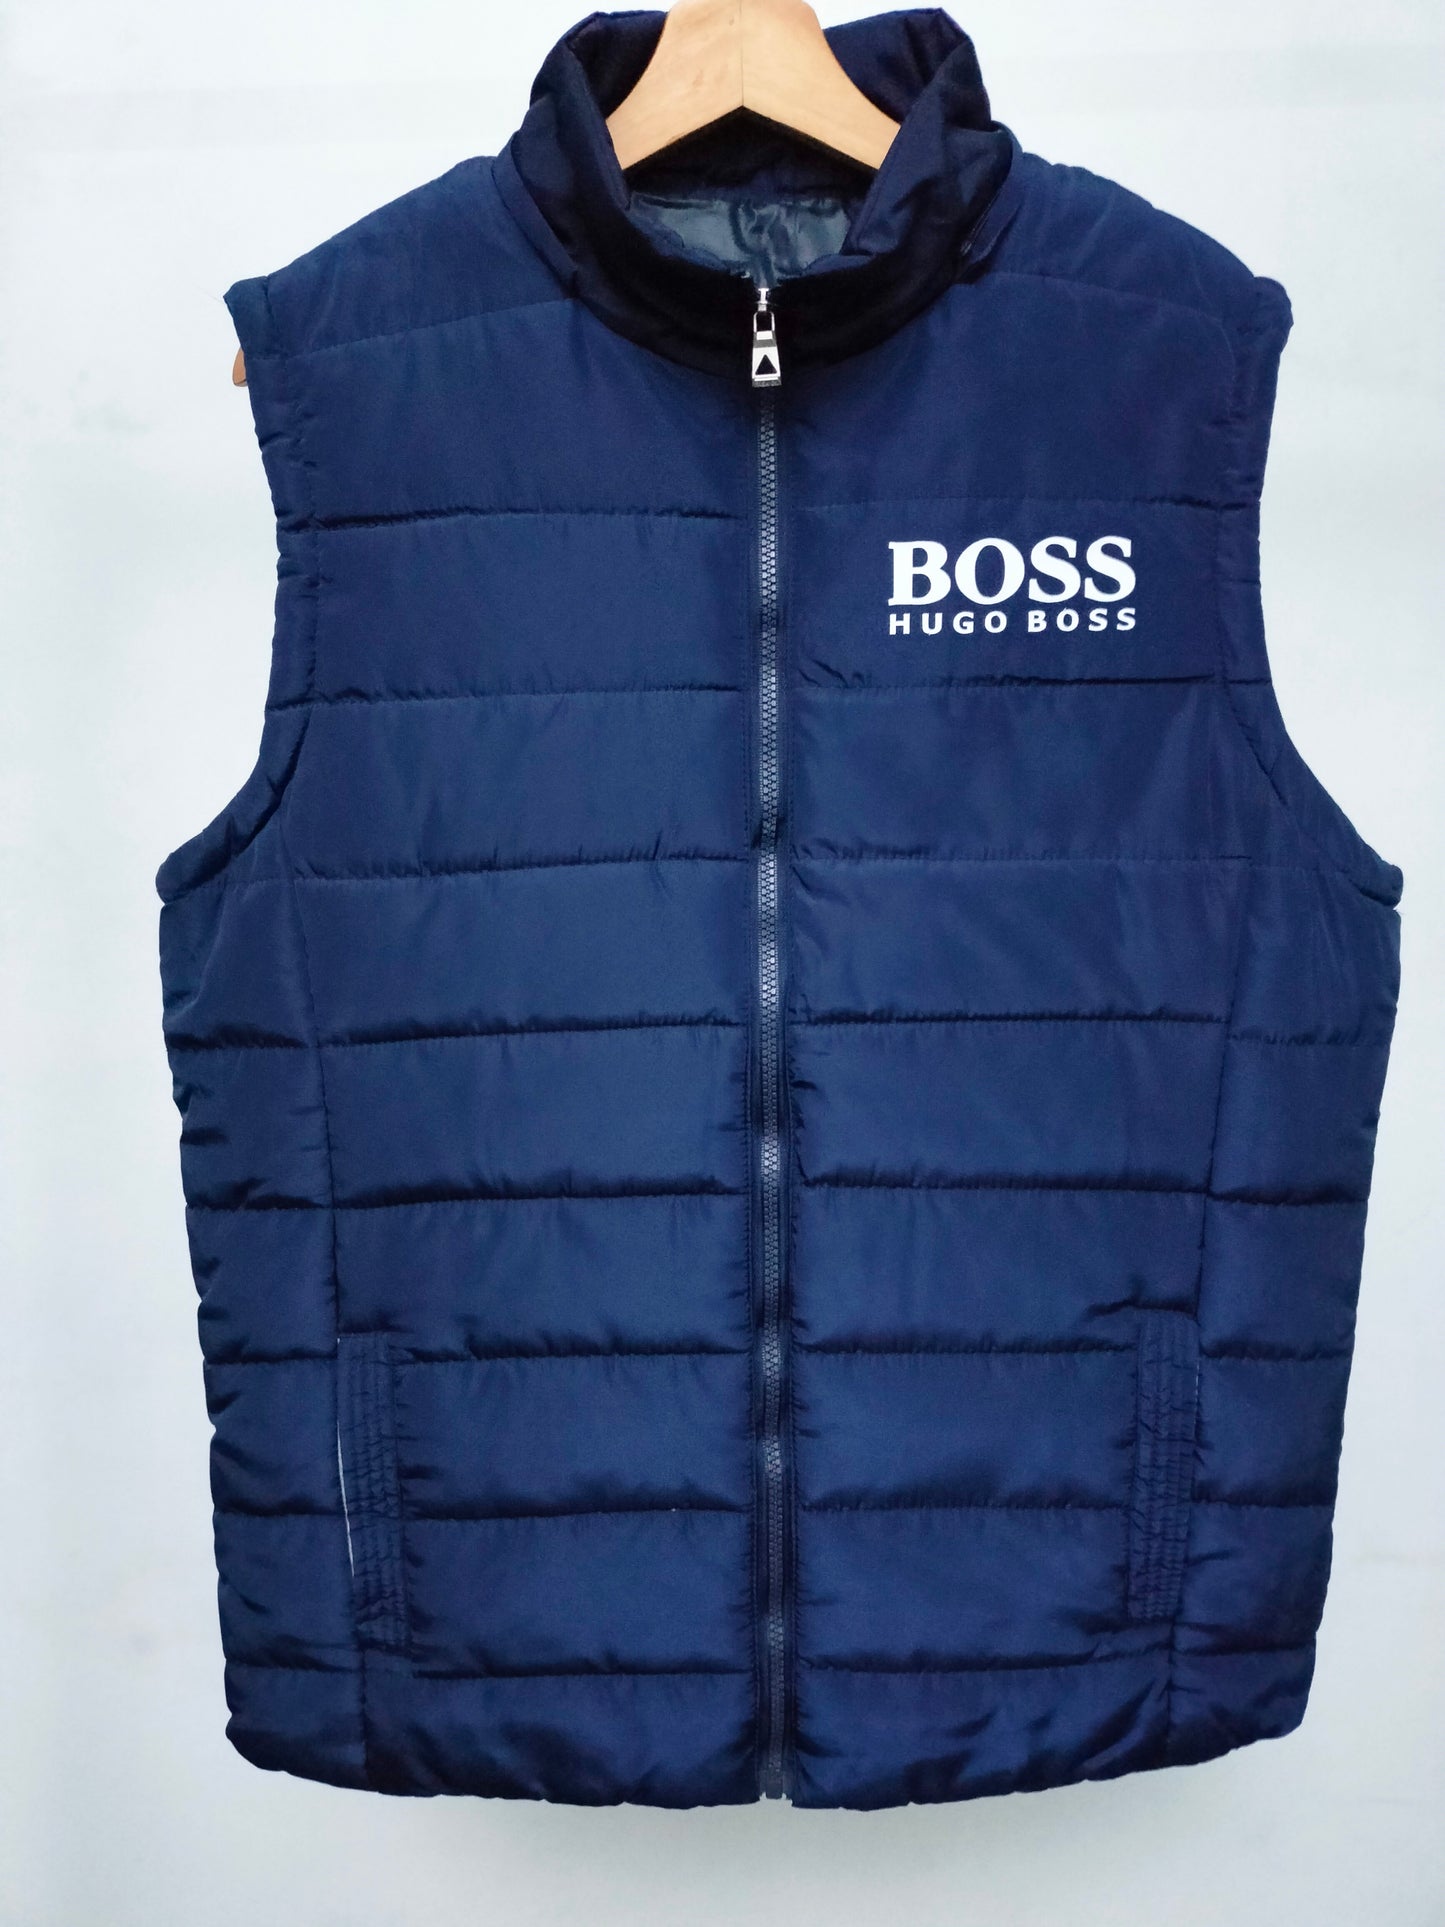 Boss By Hugo Boss Men's Logo Print Padded Gilet Jacket